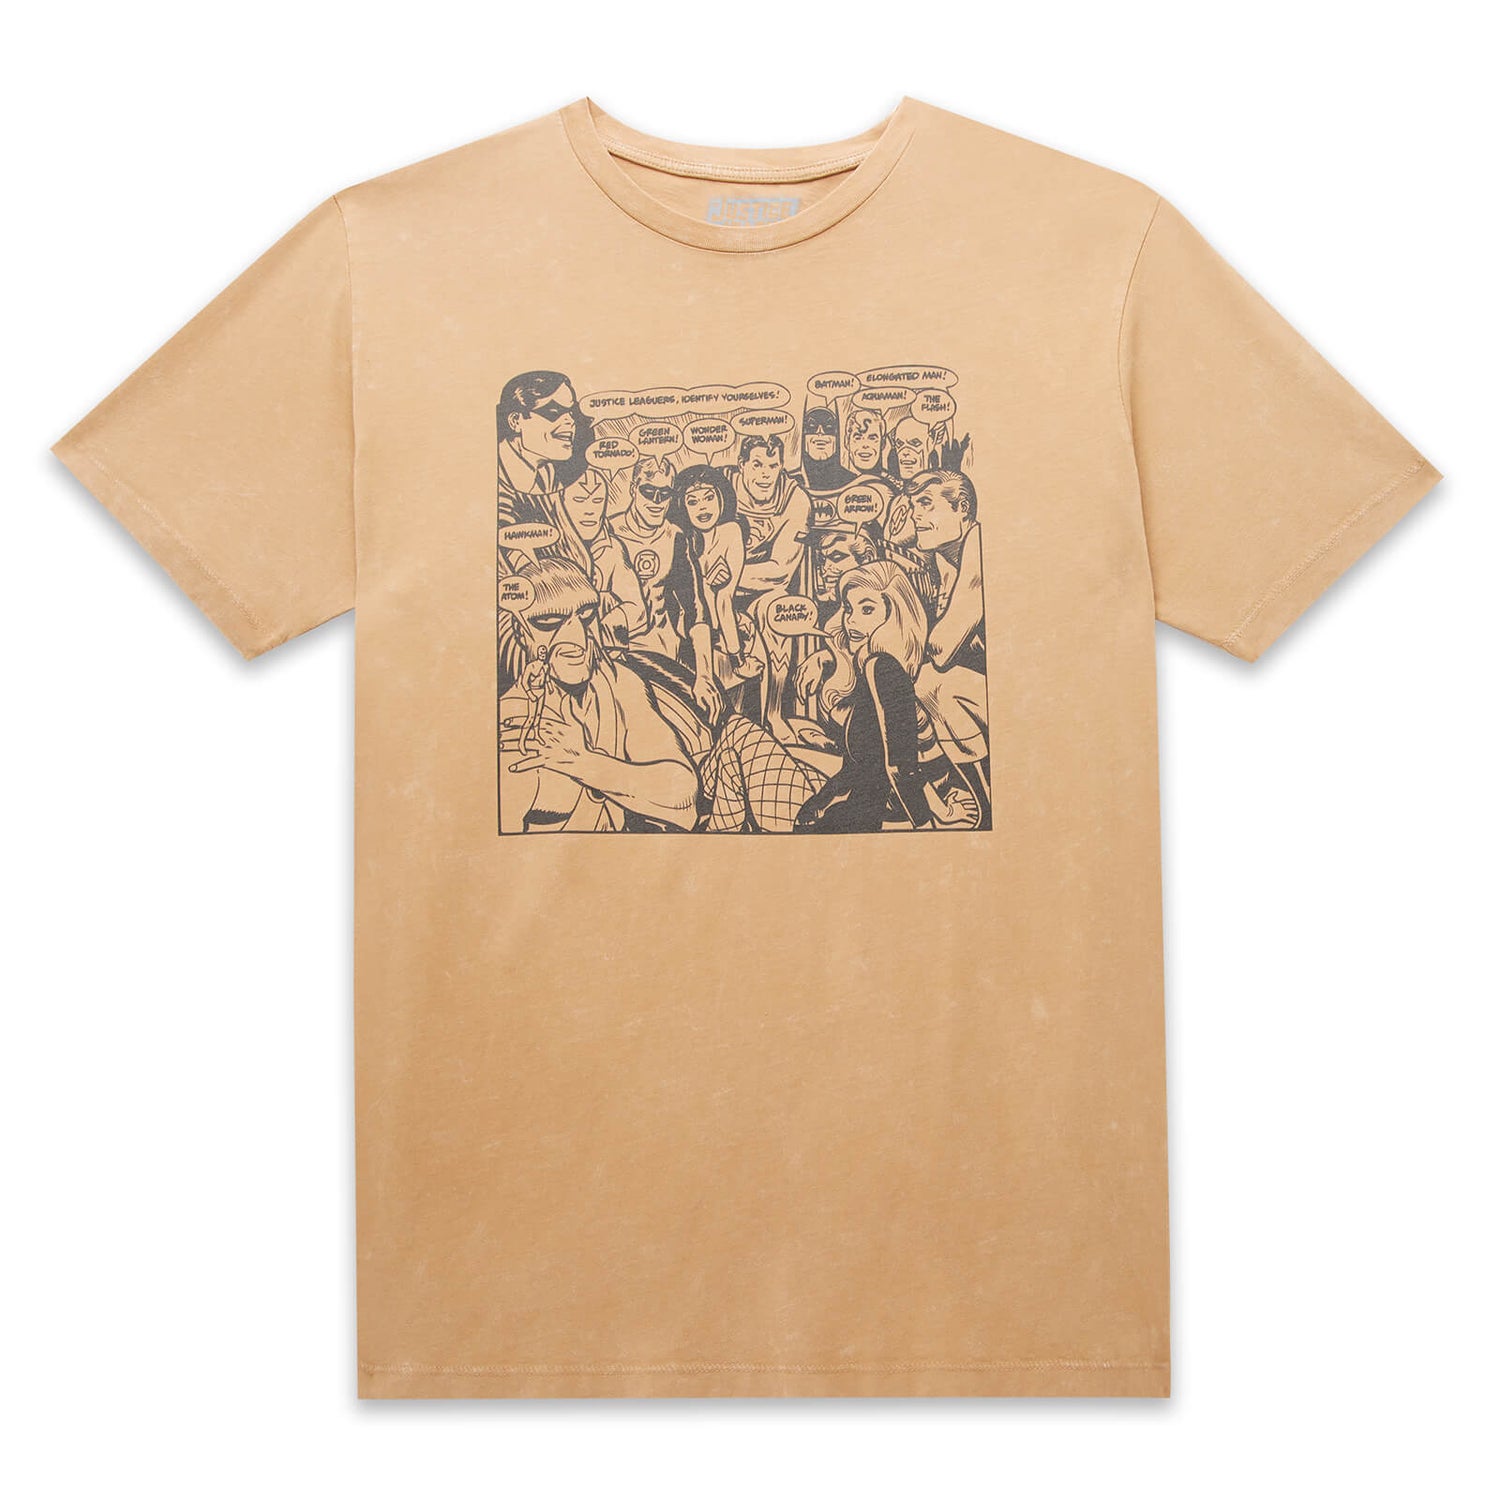 Camiseta unisex de Justice League - Lavado ácido bronceado